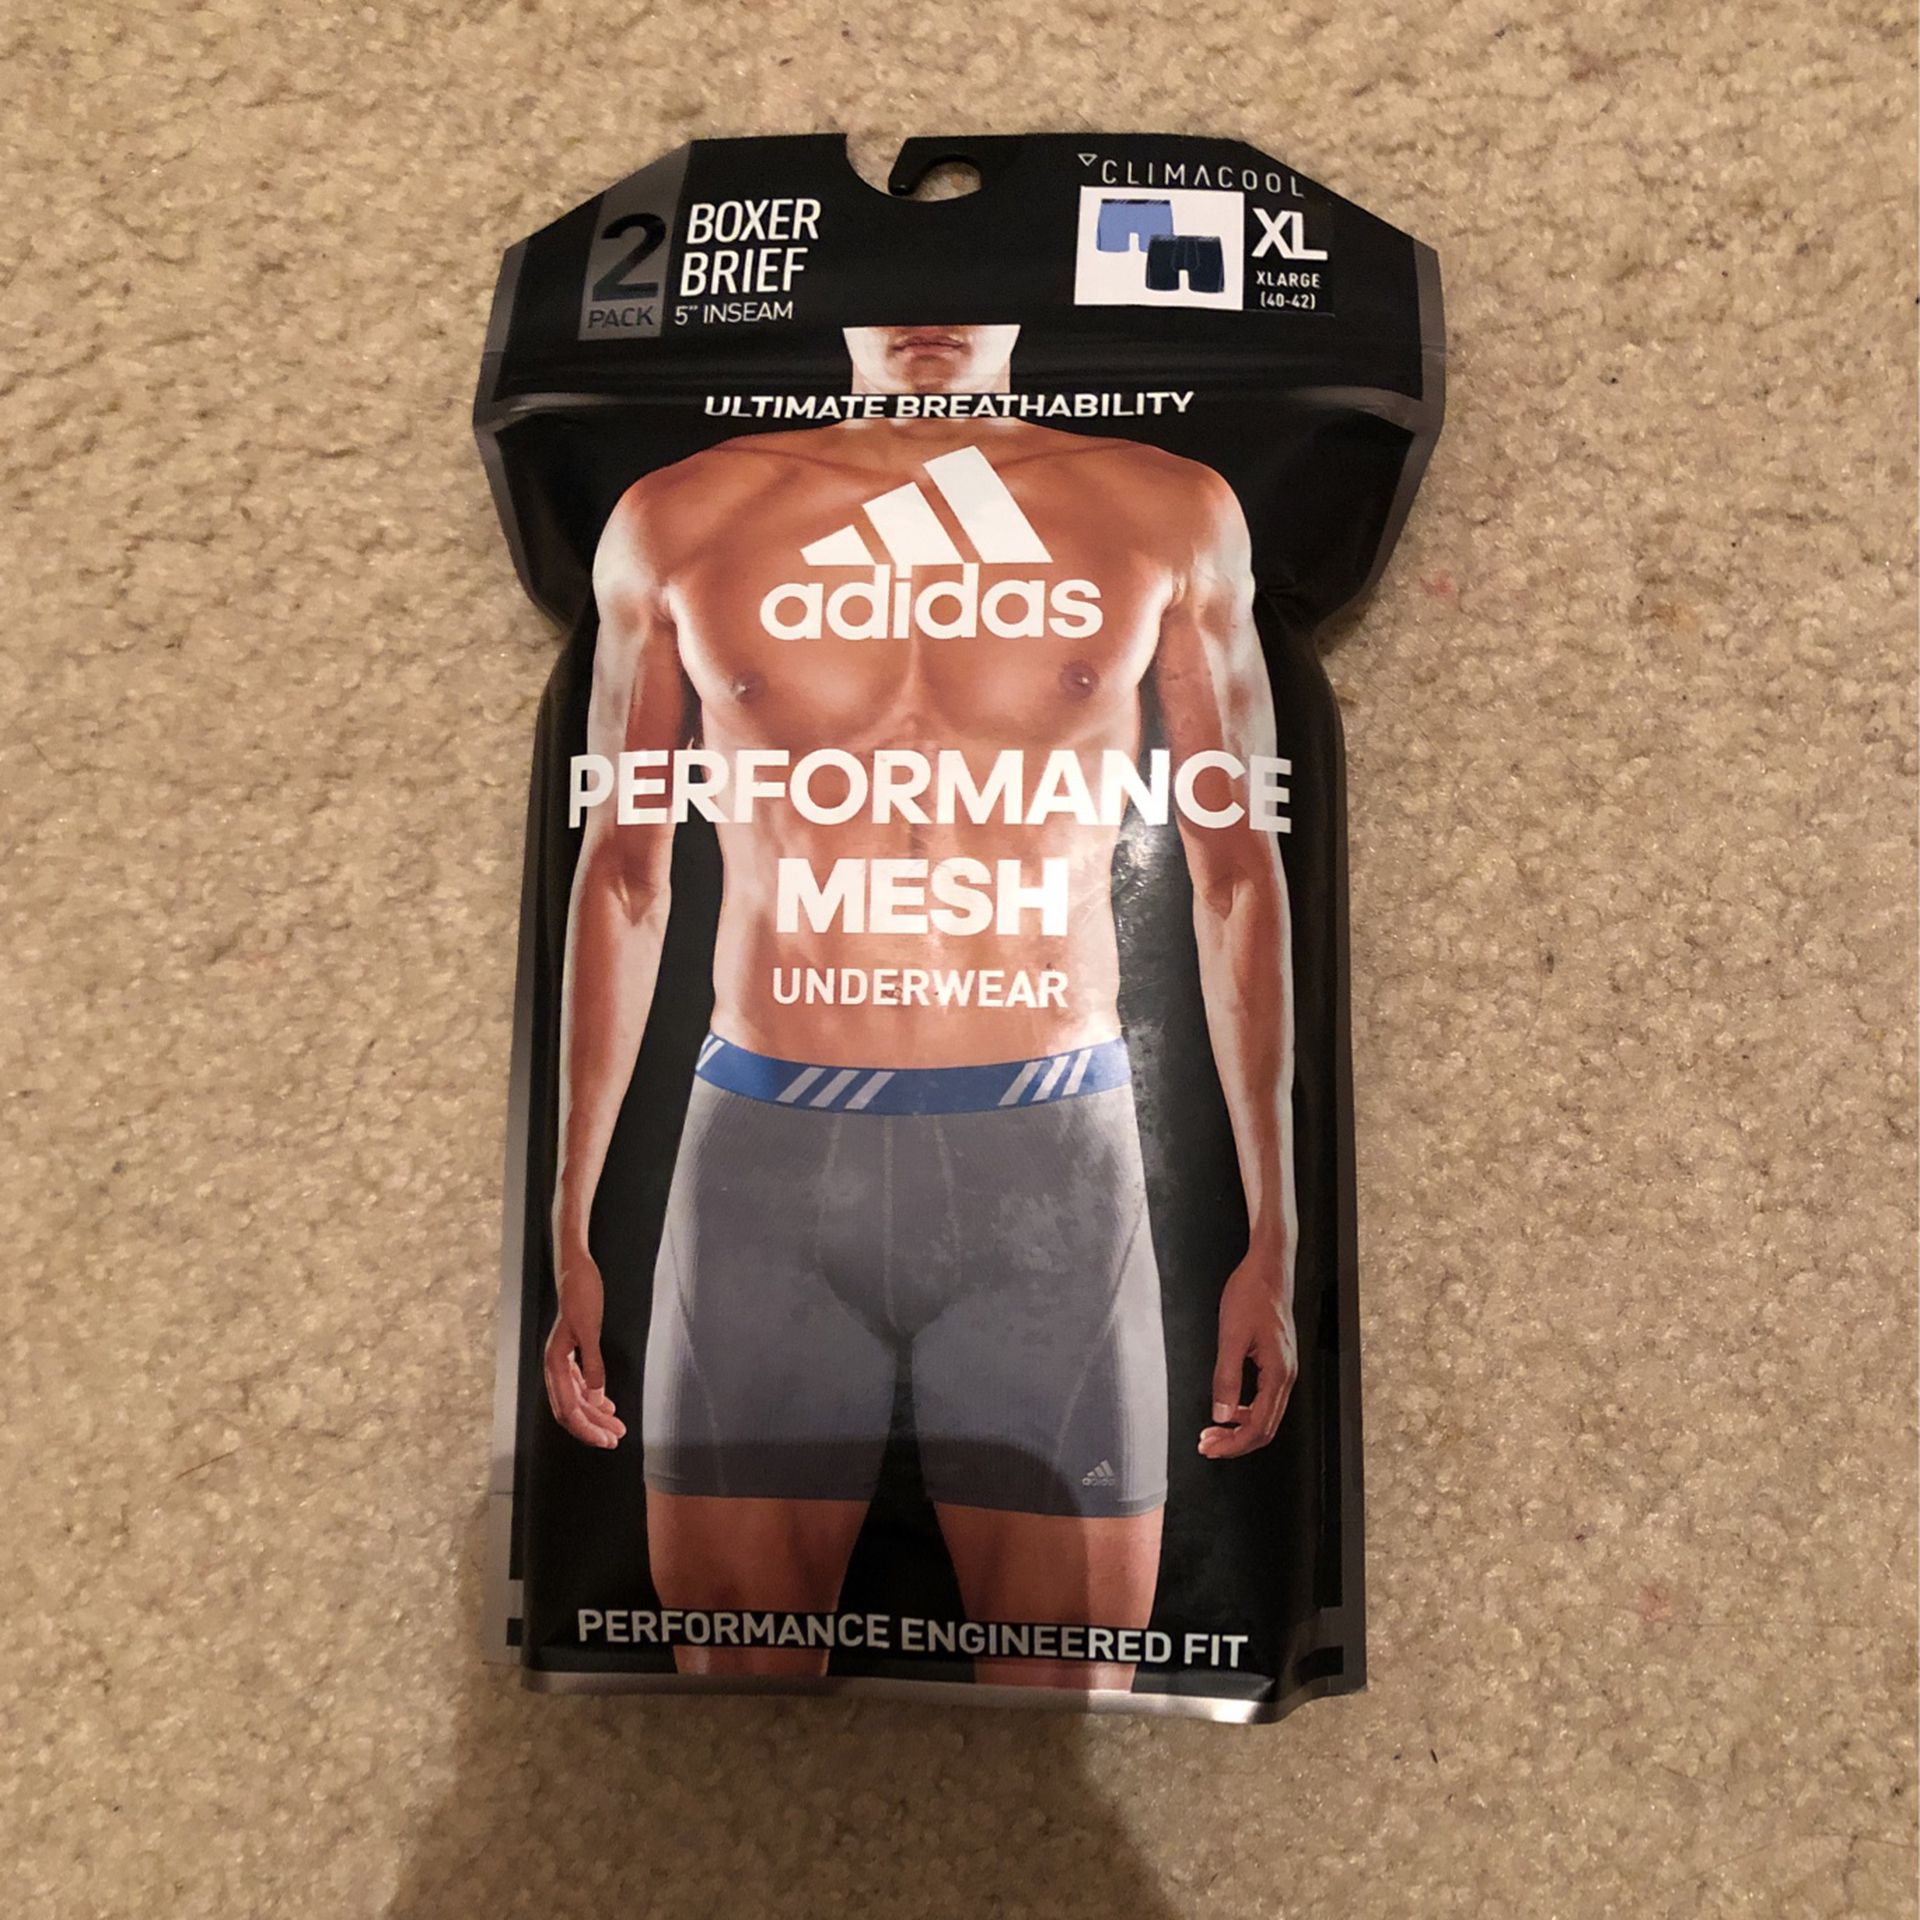 Adidas Men’s Performance Mesh Underwear 